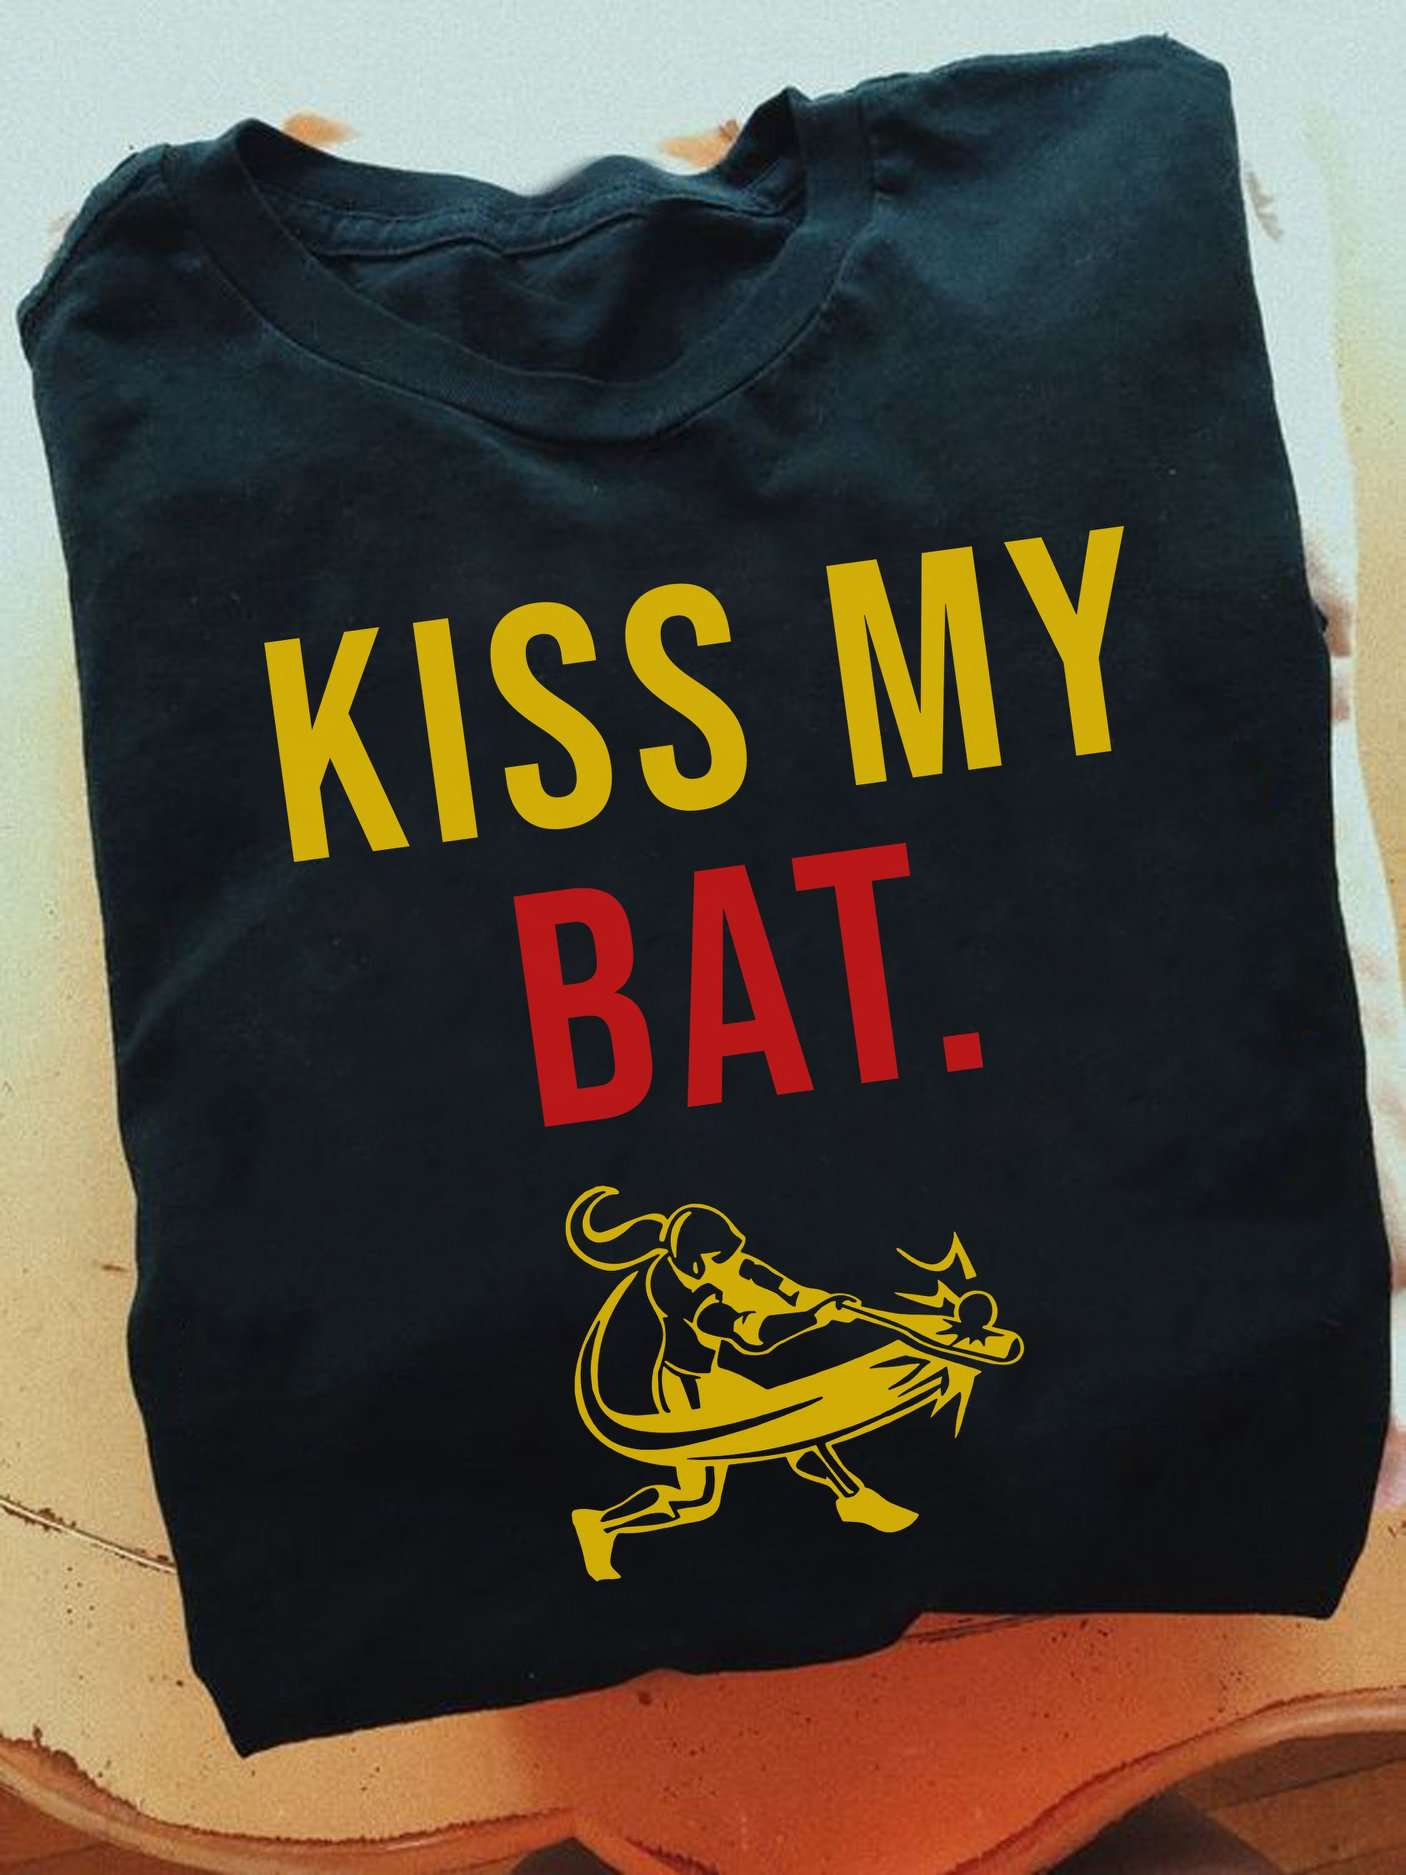 Kiss my bad - Girl baseball player, hit baseball